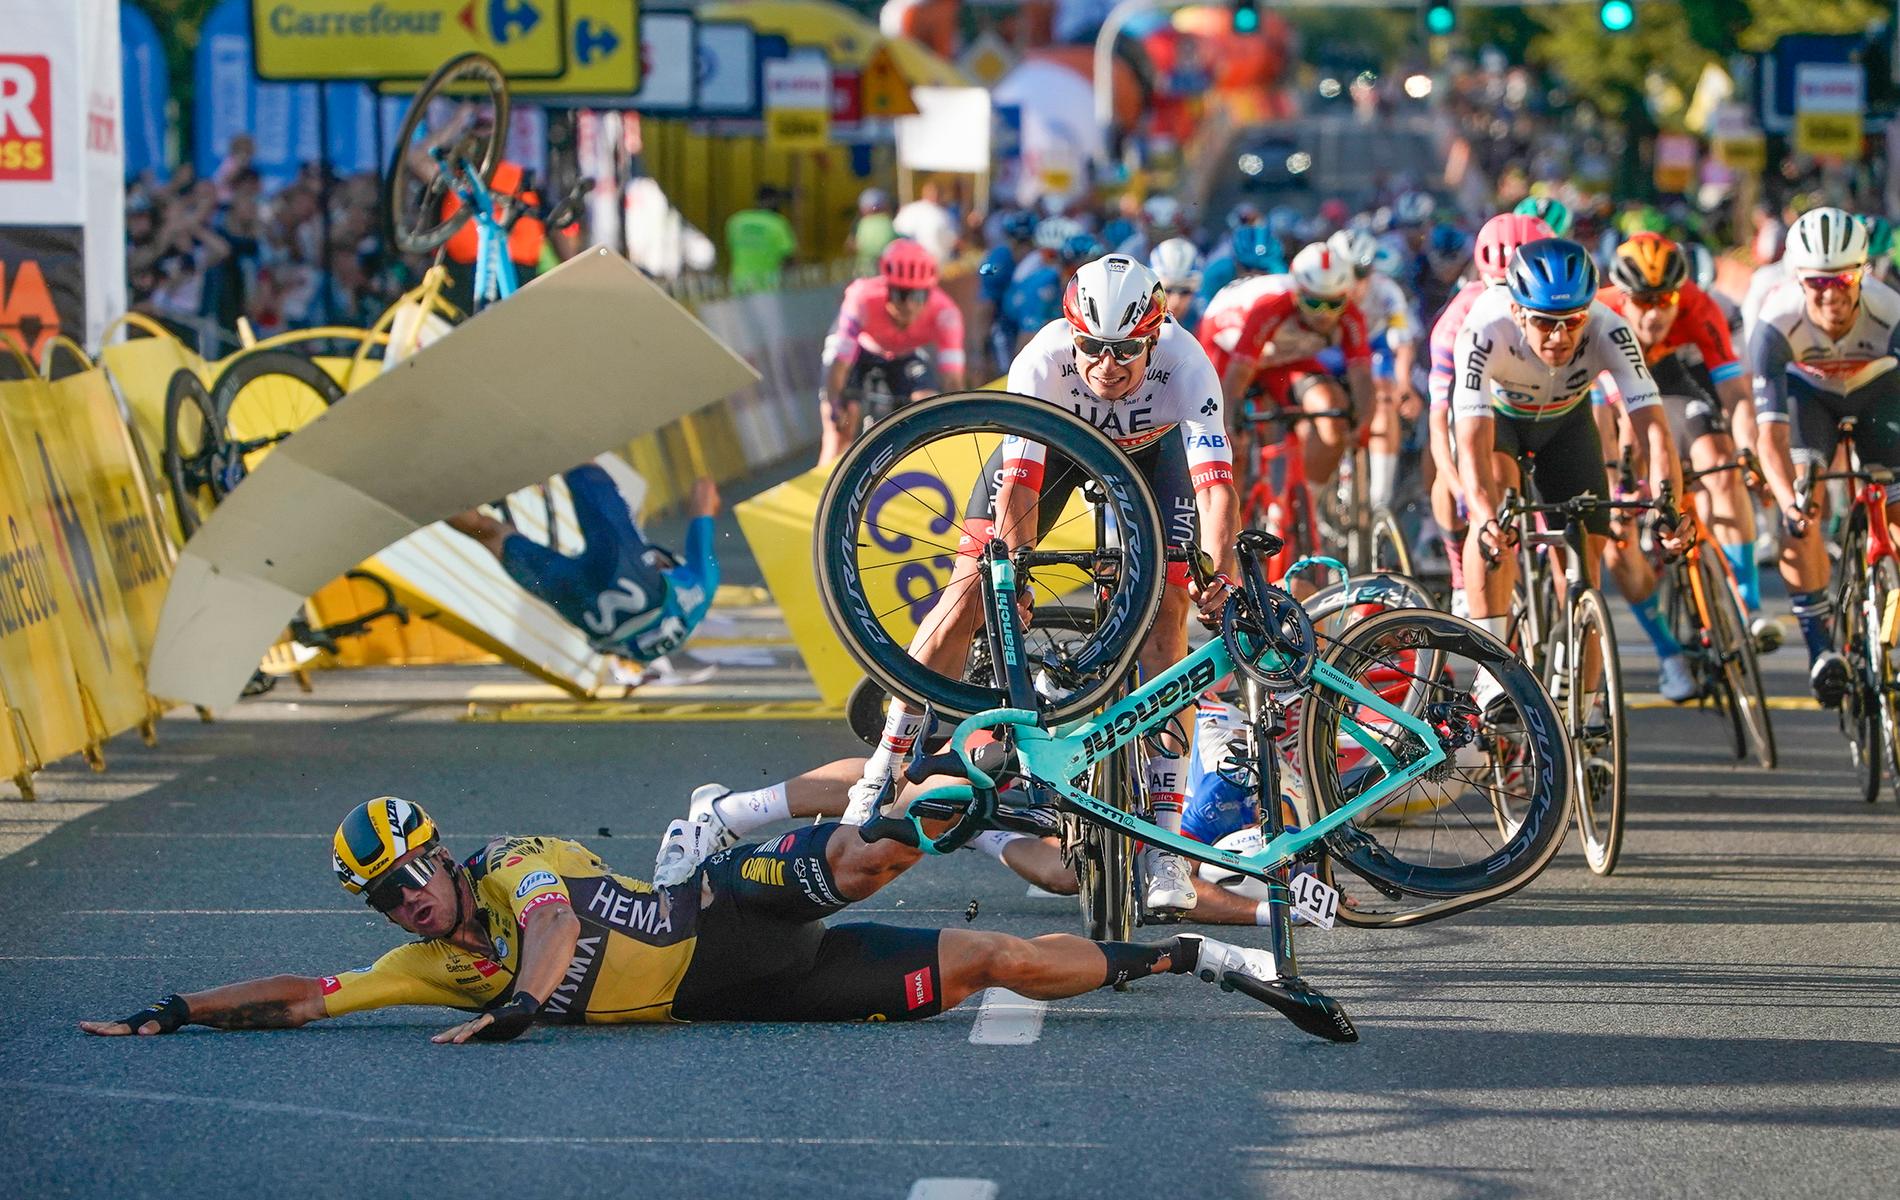 Dylan Groenewegen (gulsvart) orsakade en masskrasch i Tour de Polognes.